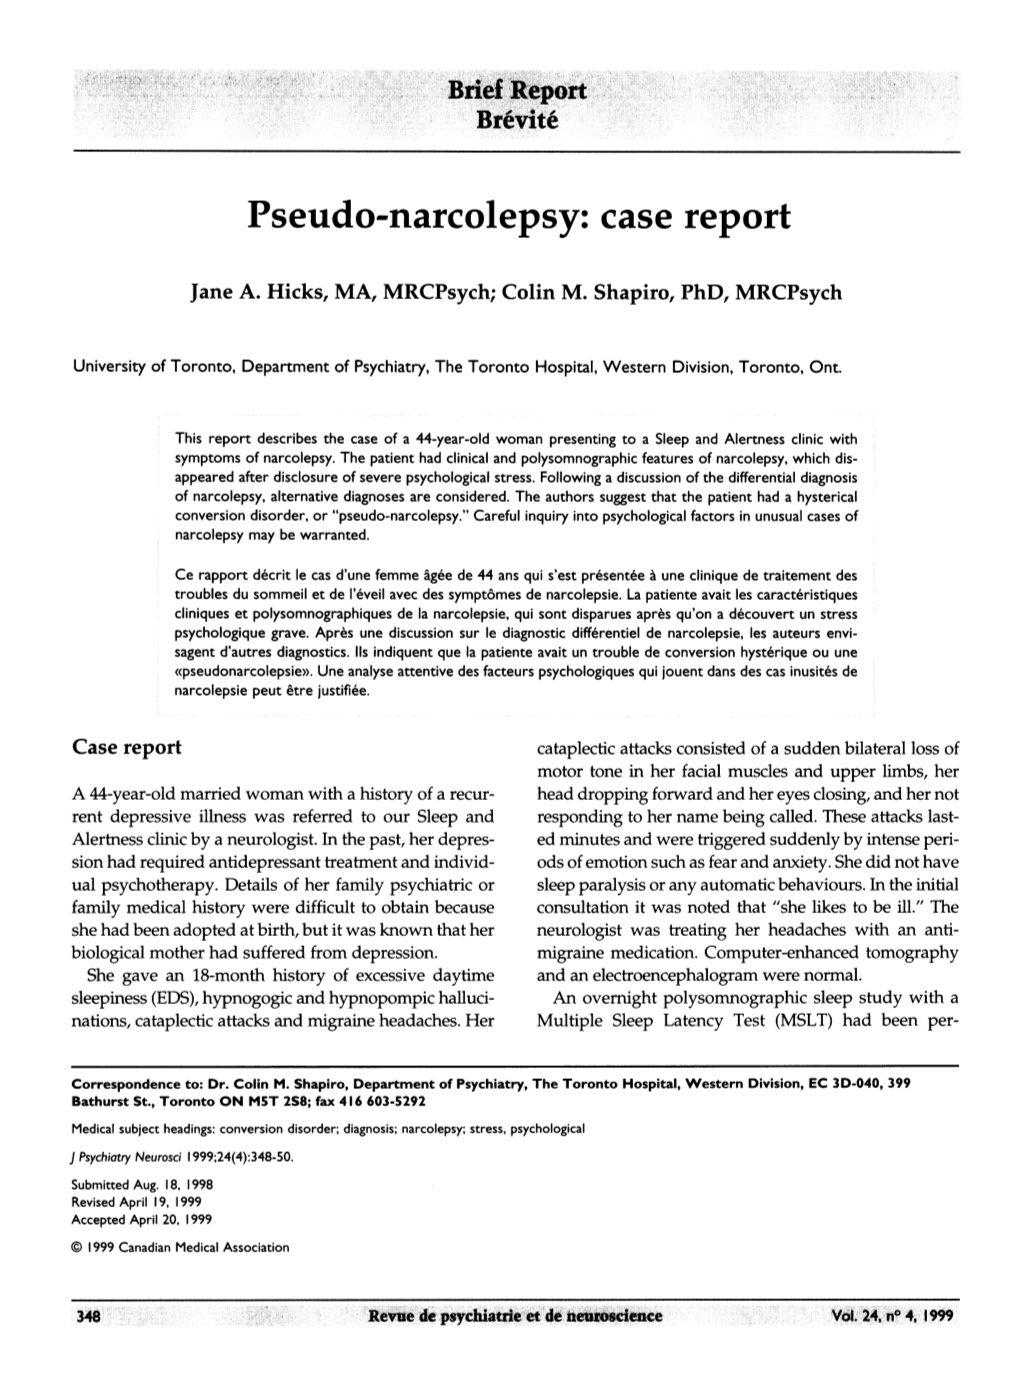 Pseudo-Narcolepsy: Case Report